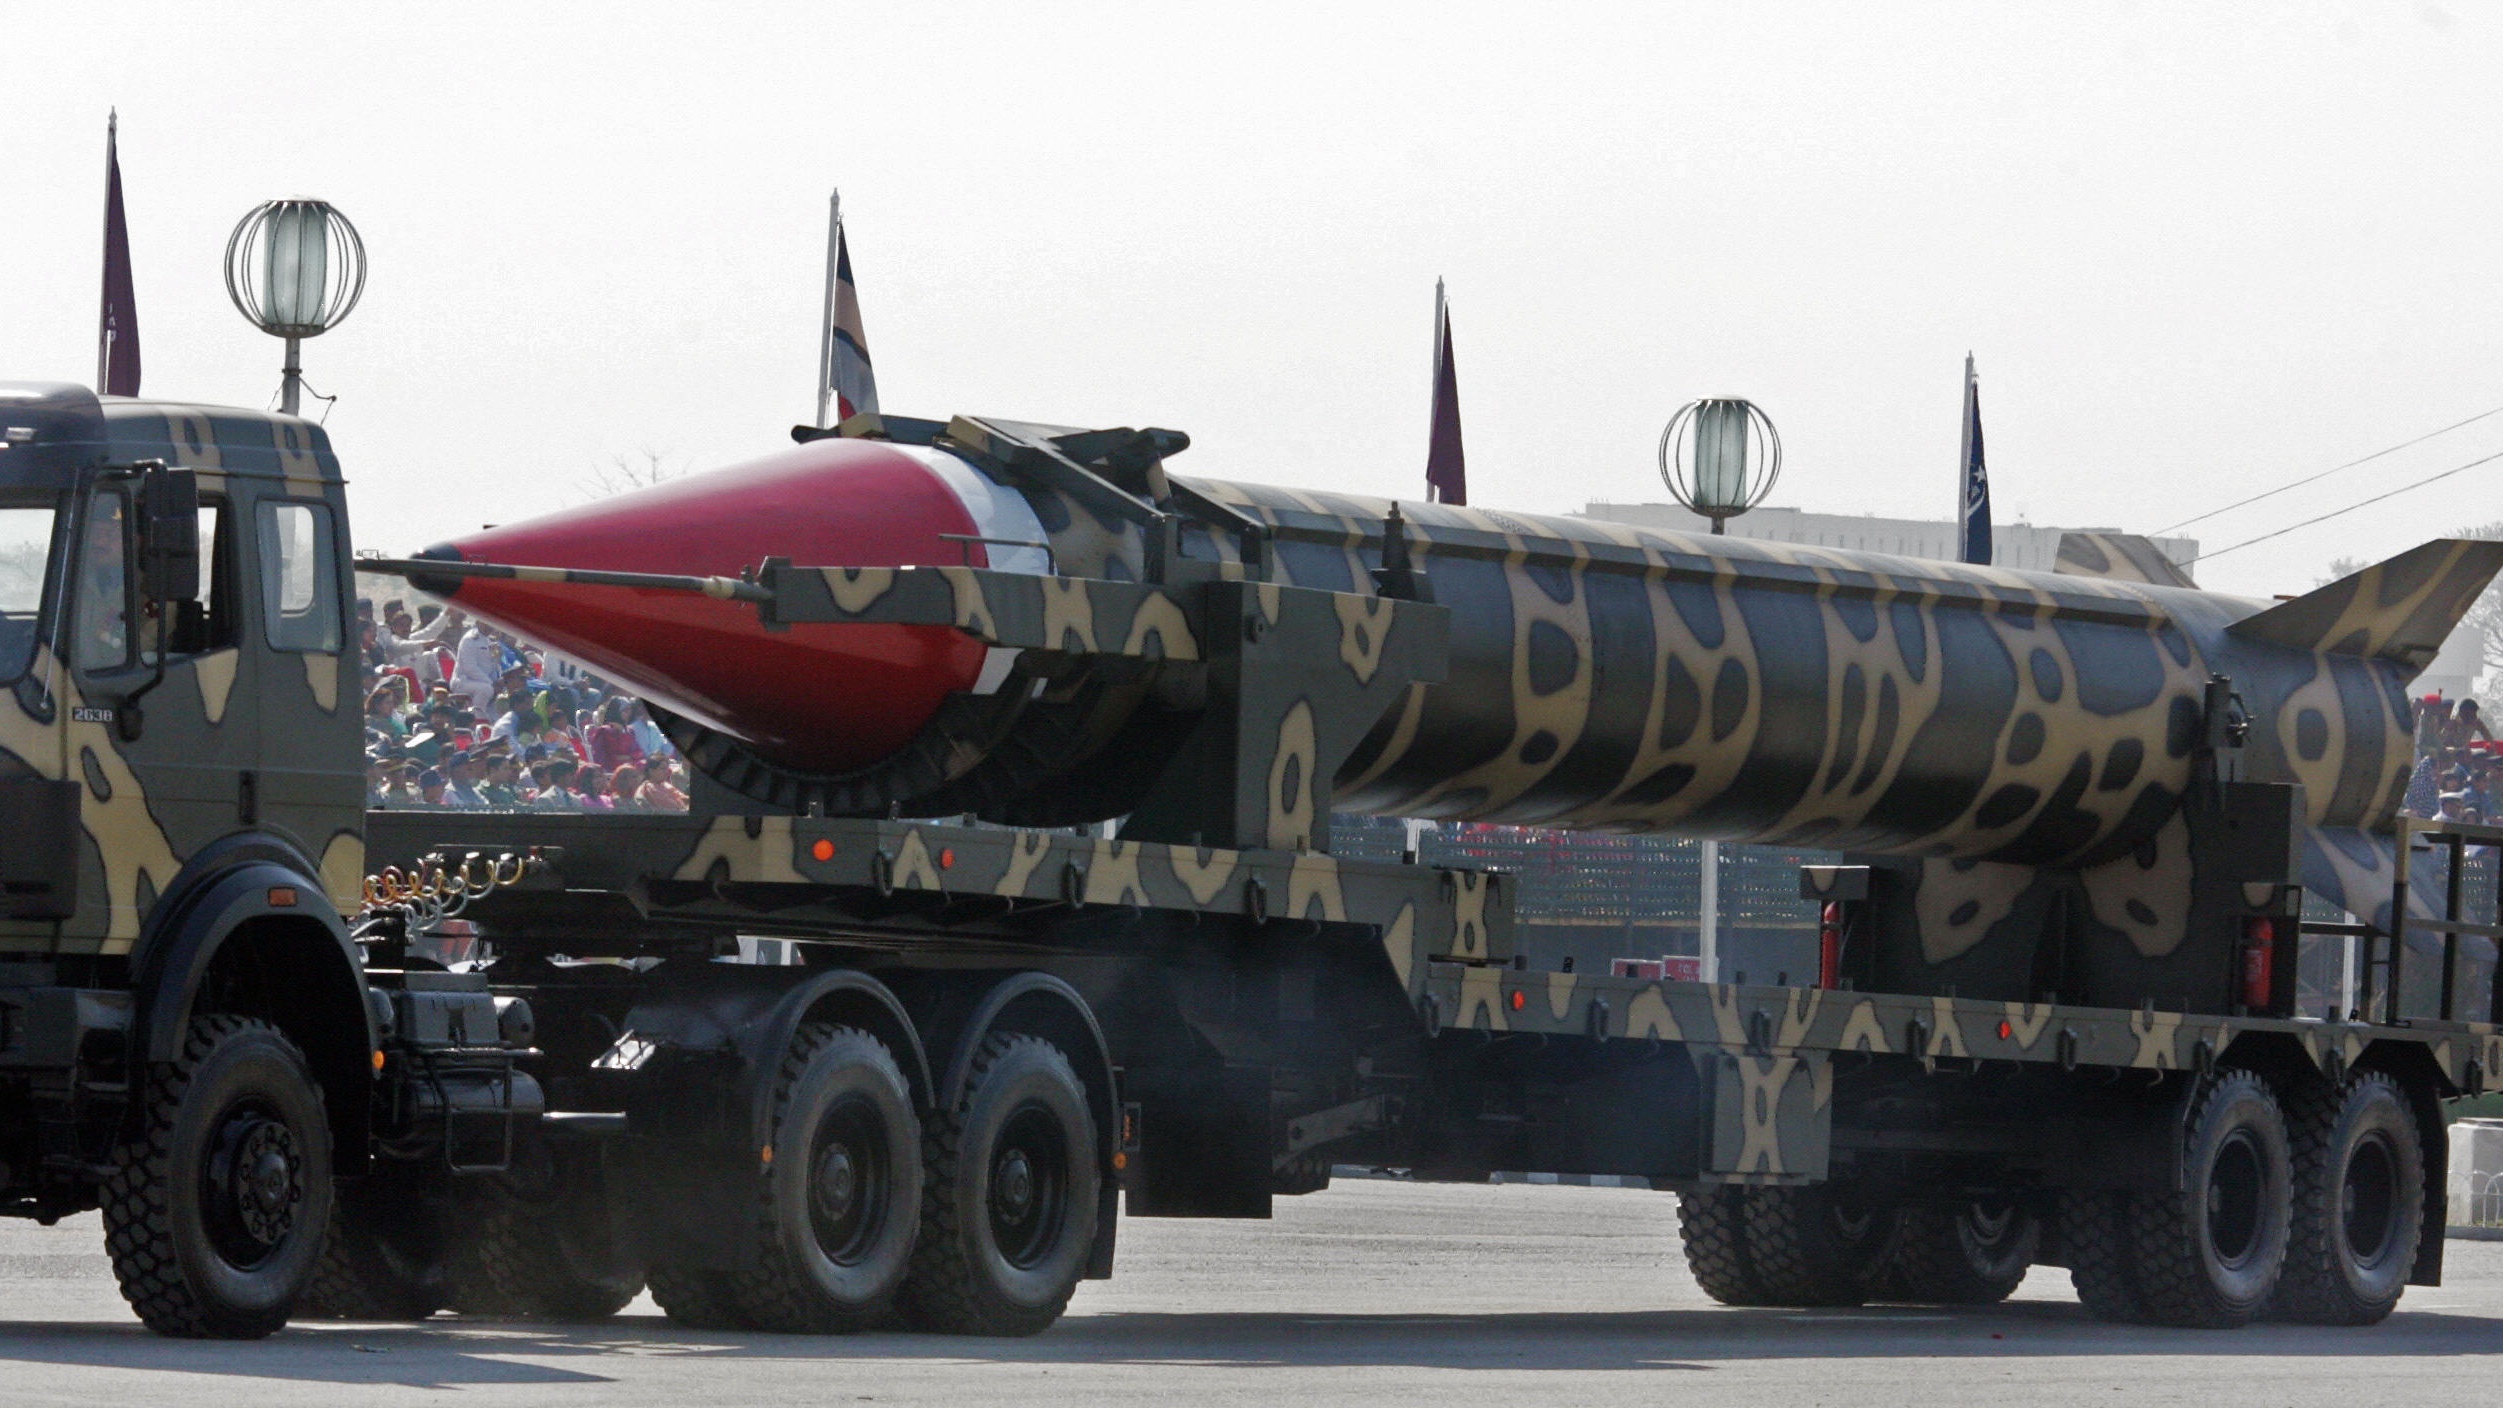 Il Pakistan ha testato con successo il missile balistico Ghauri a propulsione liquida con una gittata di 1.500 km